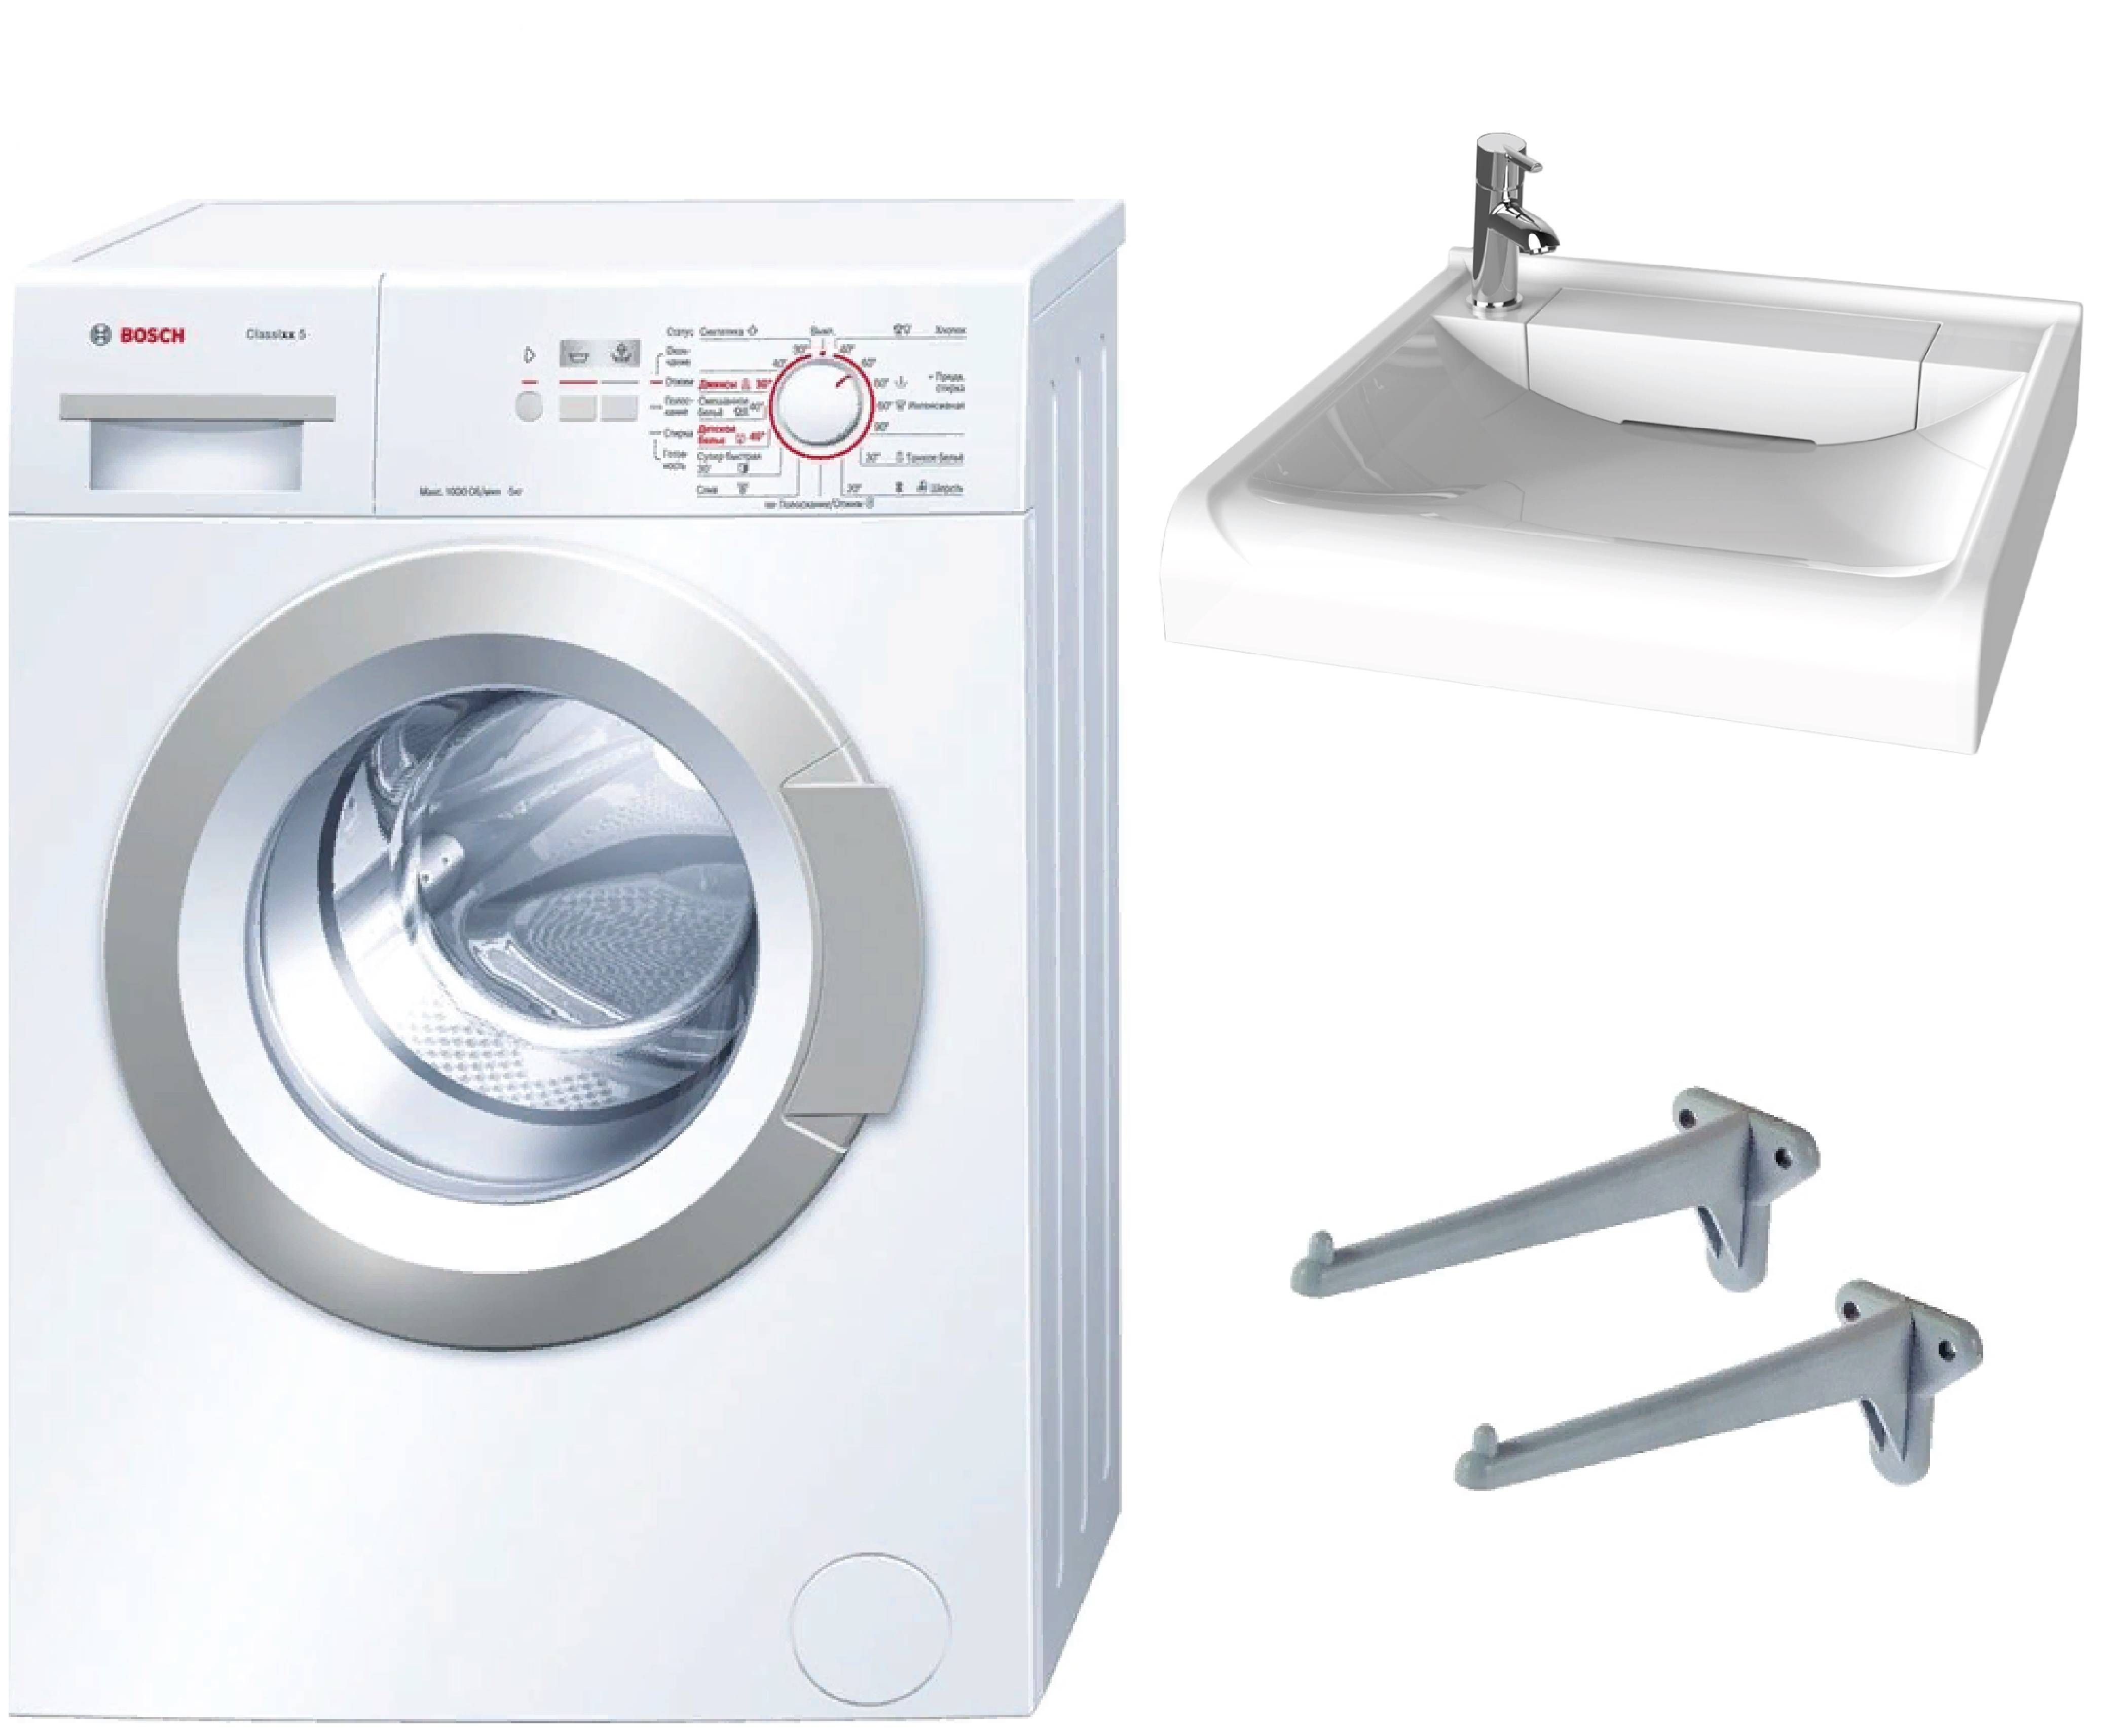 Выбор производителя стиральной машины: главные параметры для удачной покупки + рейтинг с обзорами популярных моделей